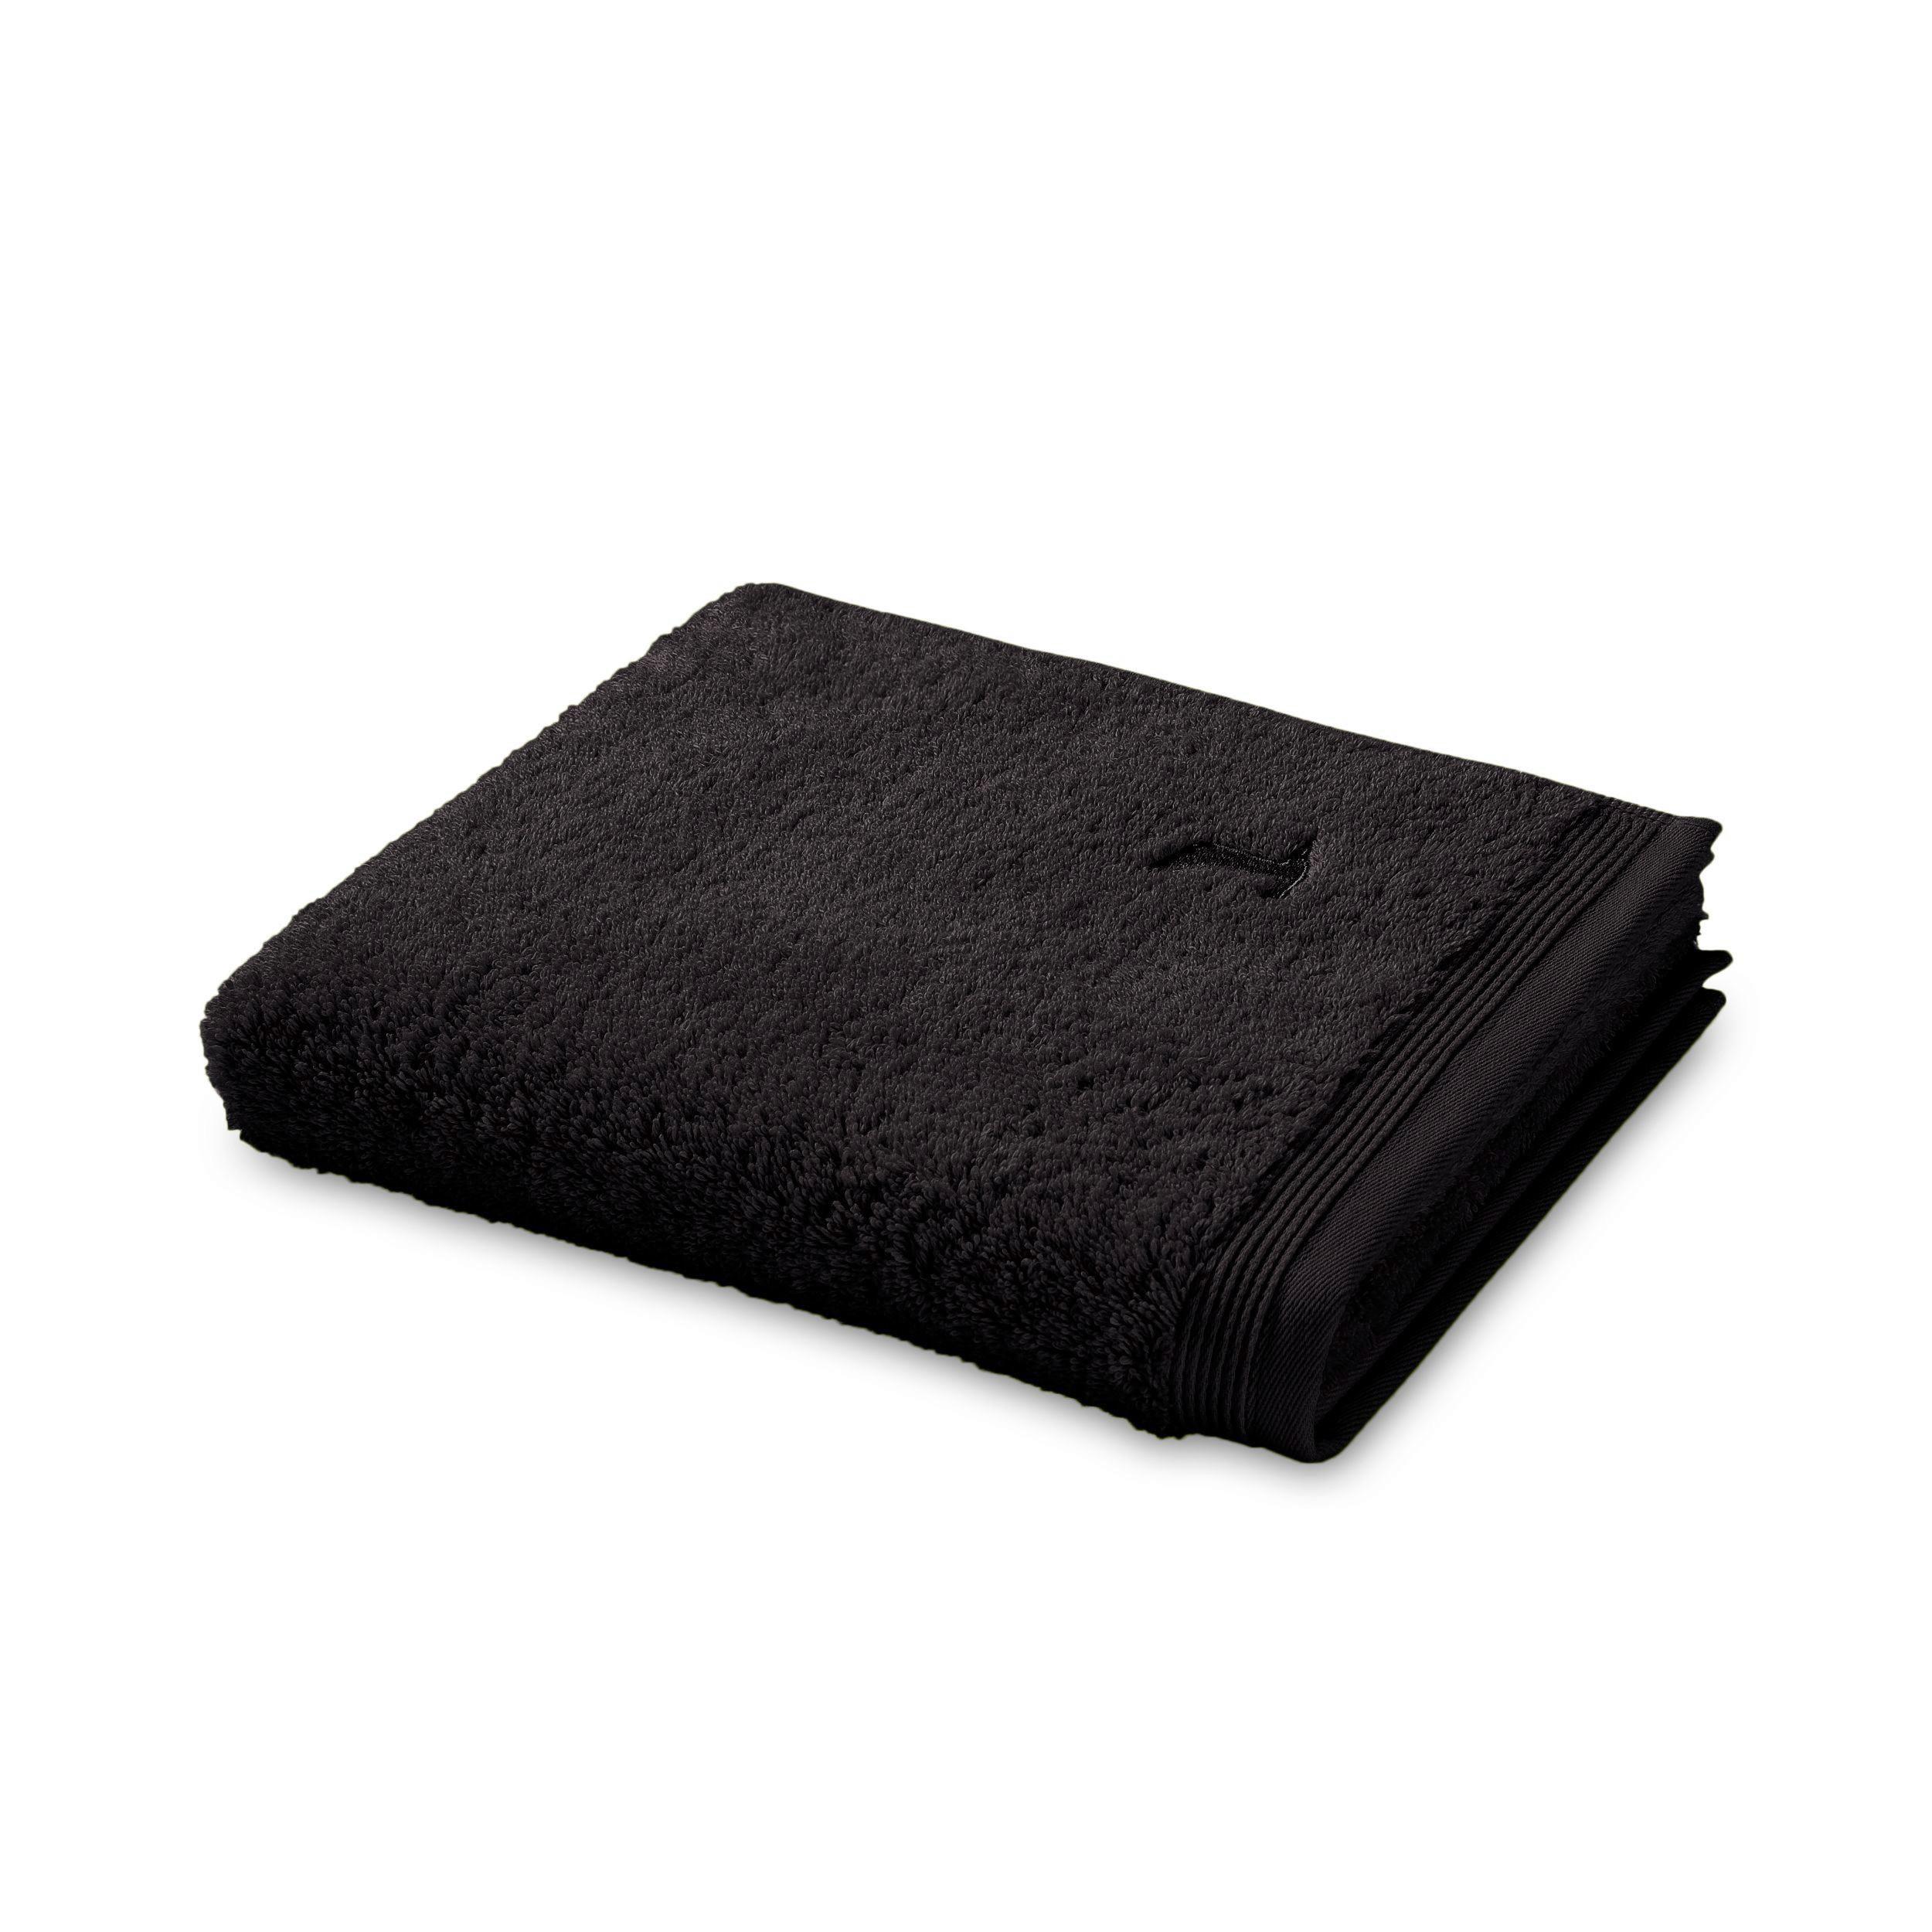 Handtuch Superwuschel Baumwolle 550g/M2 50x100 cm - Schwarz, Basics, Textil (50/100cm) - Moeve